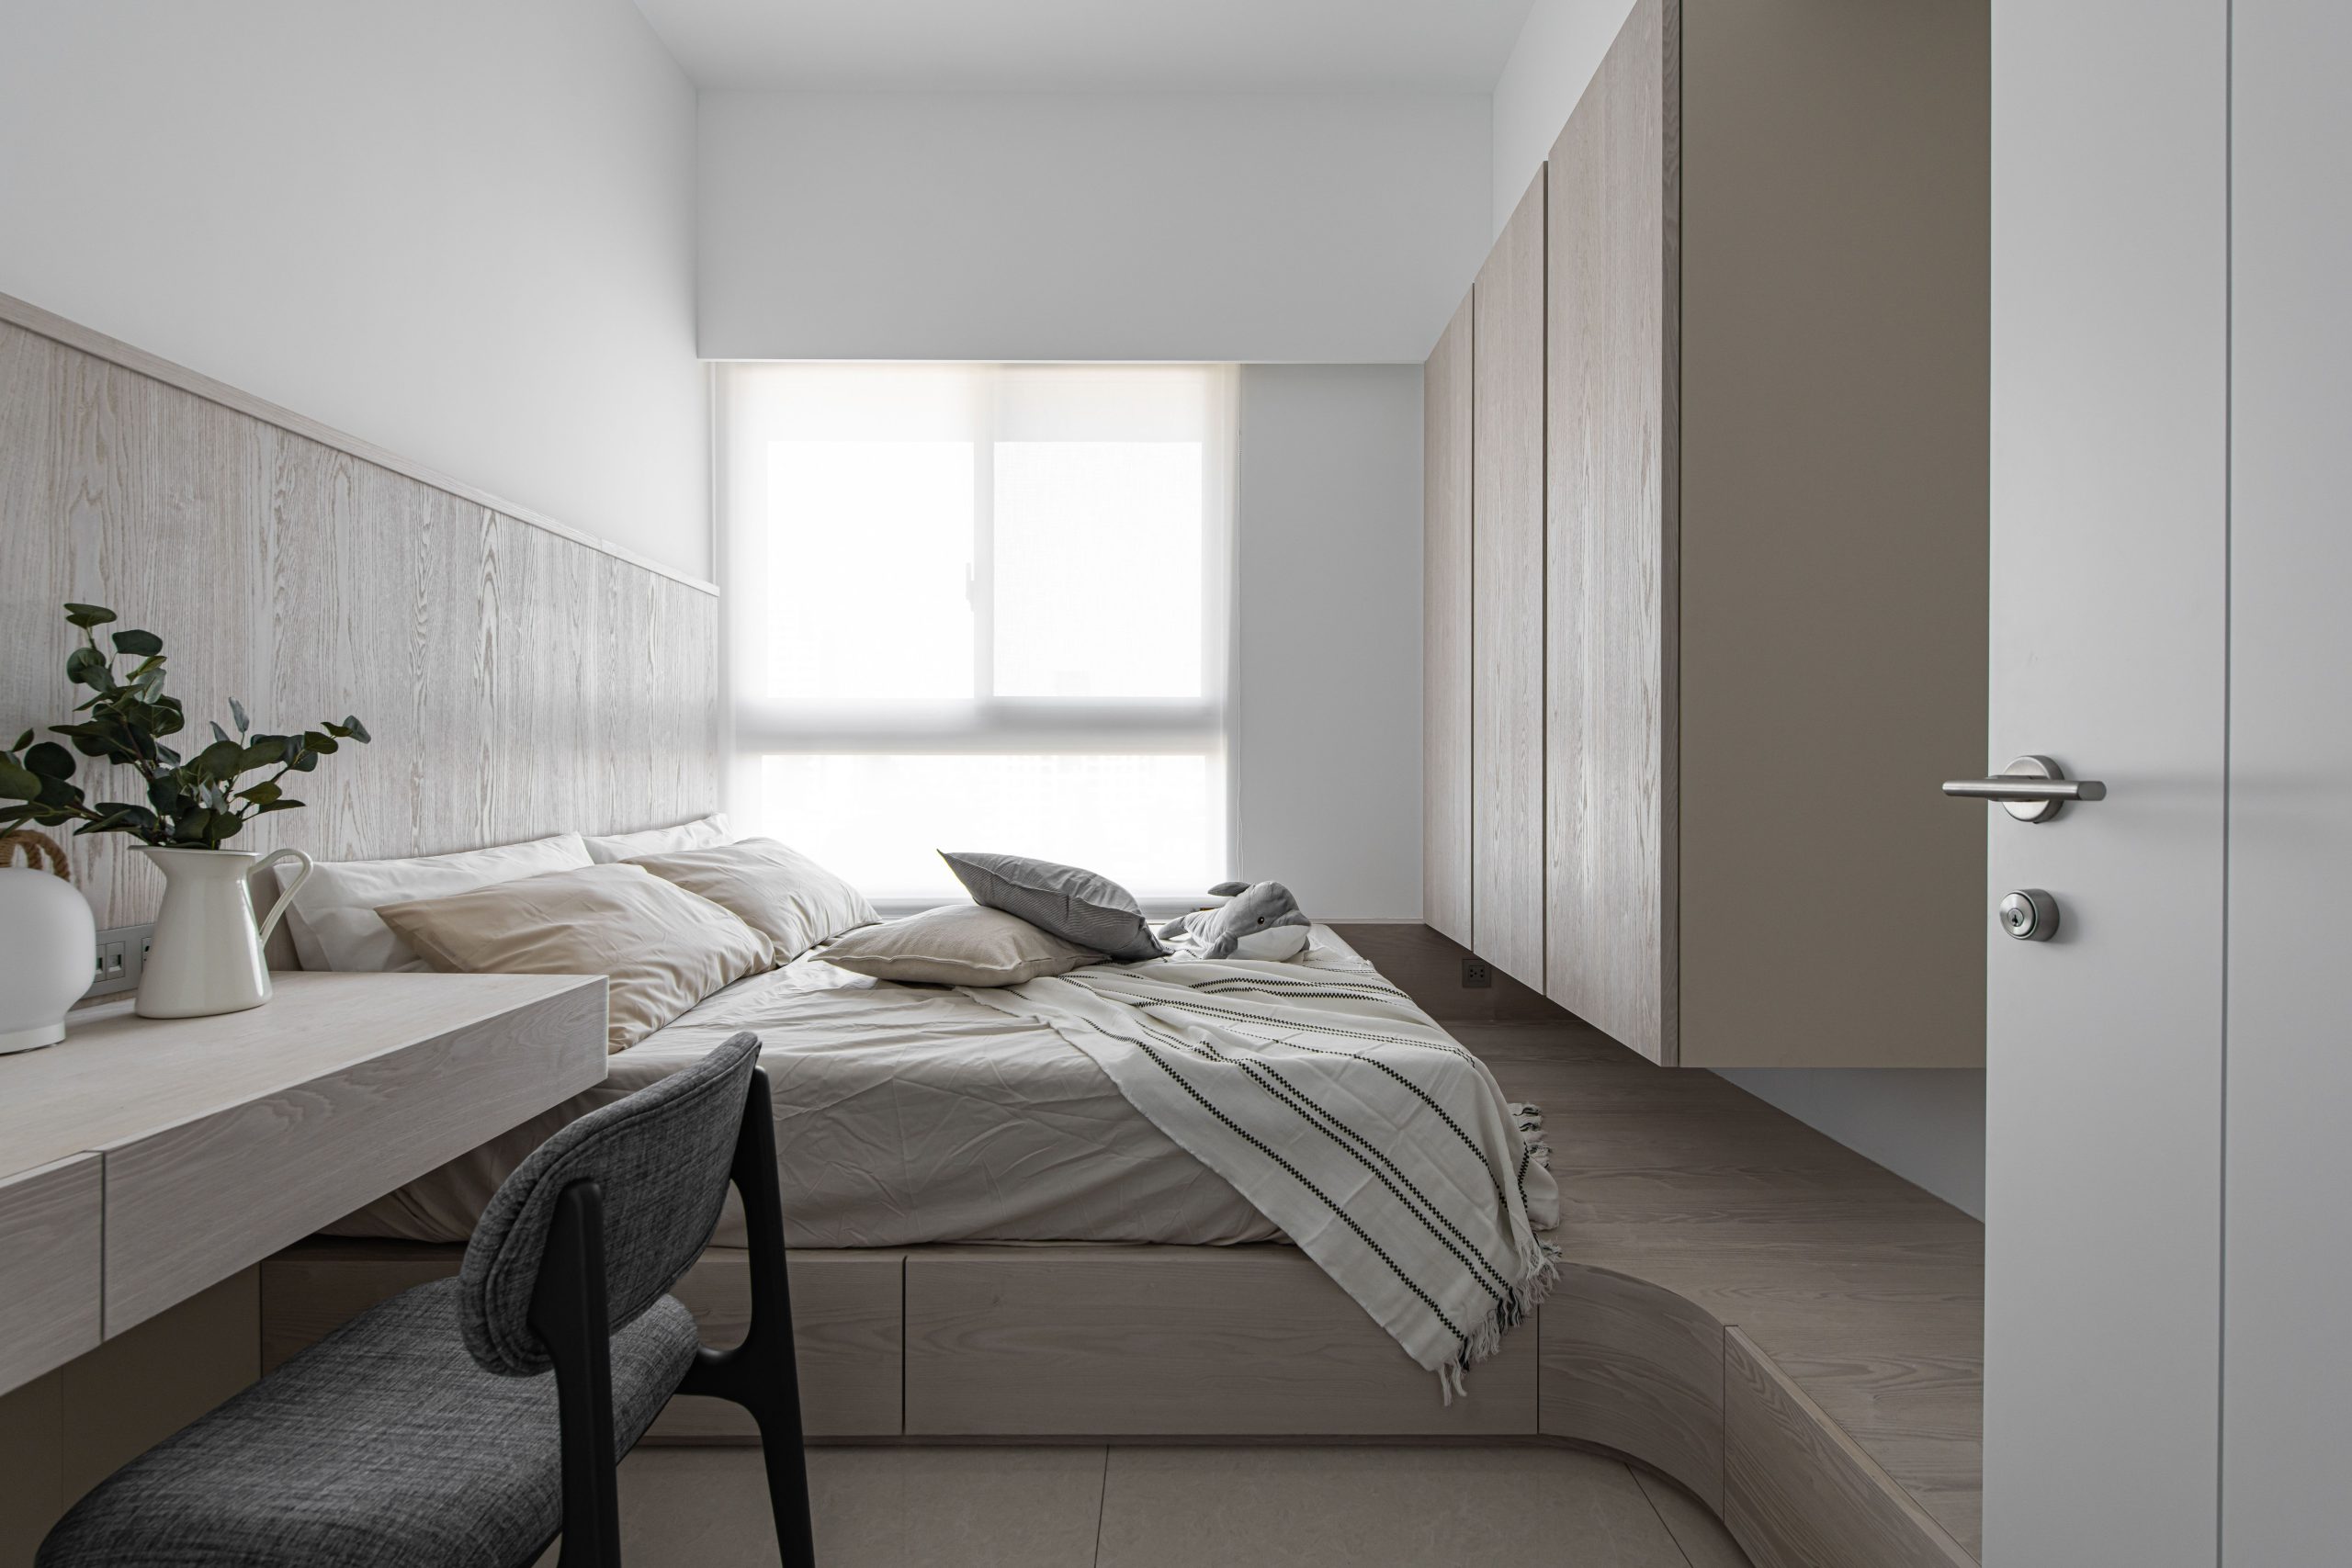 Mẫu thiết kế sử dụng toàn bộ nội thất thông minh như: giường kết hợp với tủ đựng đồ bên dưới, tủ quần áo kết hợp với giá sách,… giúp tối ưu không gian mà vẫn đảm bảo tiện nghi nhất.